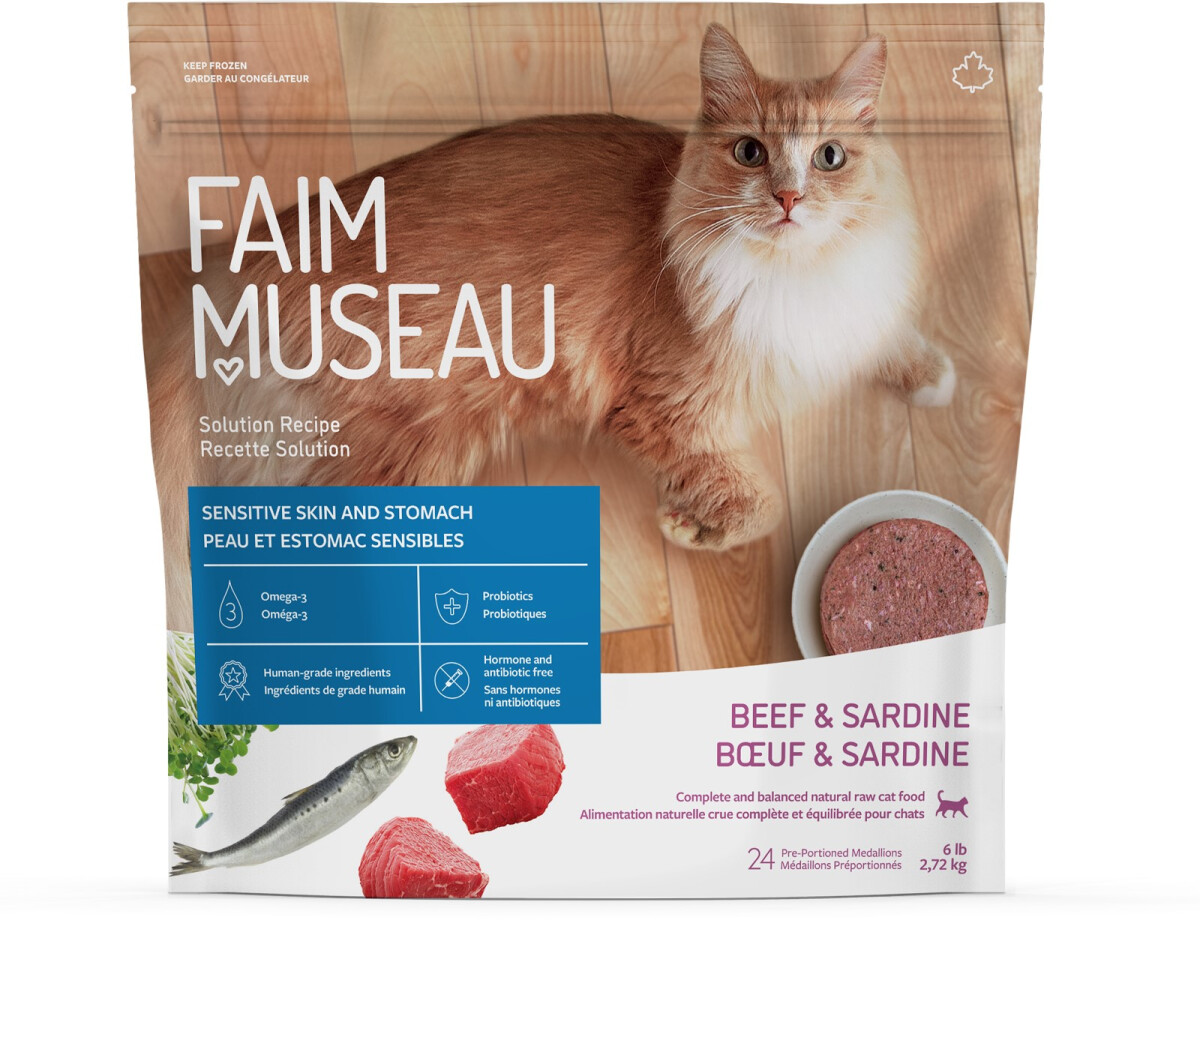 Fm316 - Nourriture crue recette solution bœuf & sardine pour chats - Faim Museau